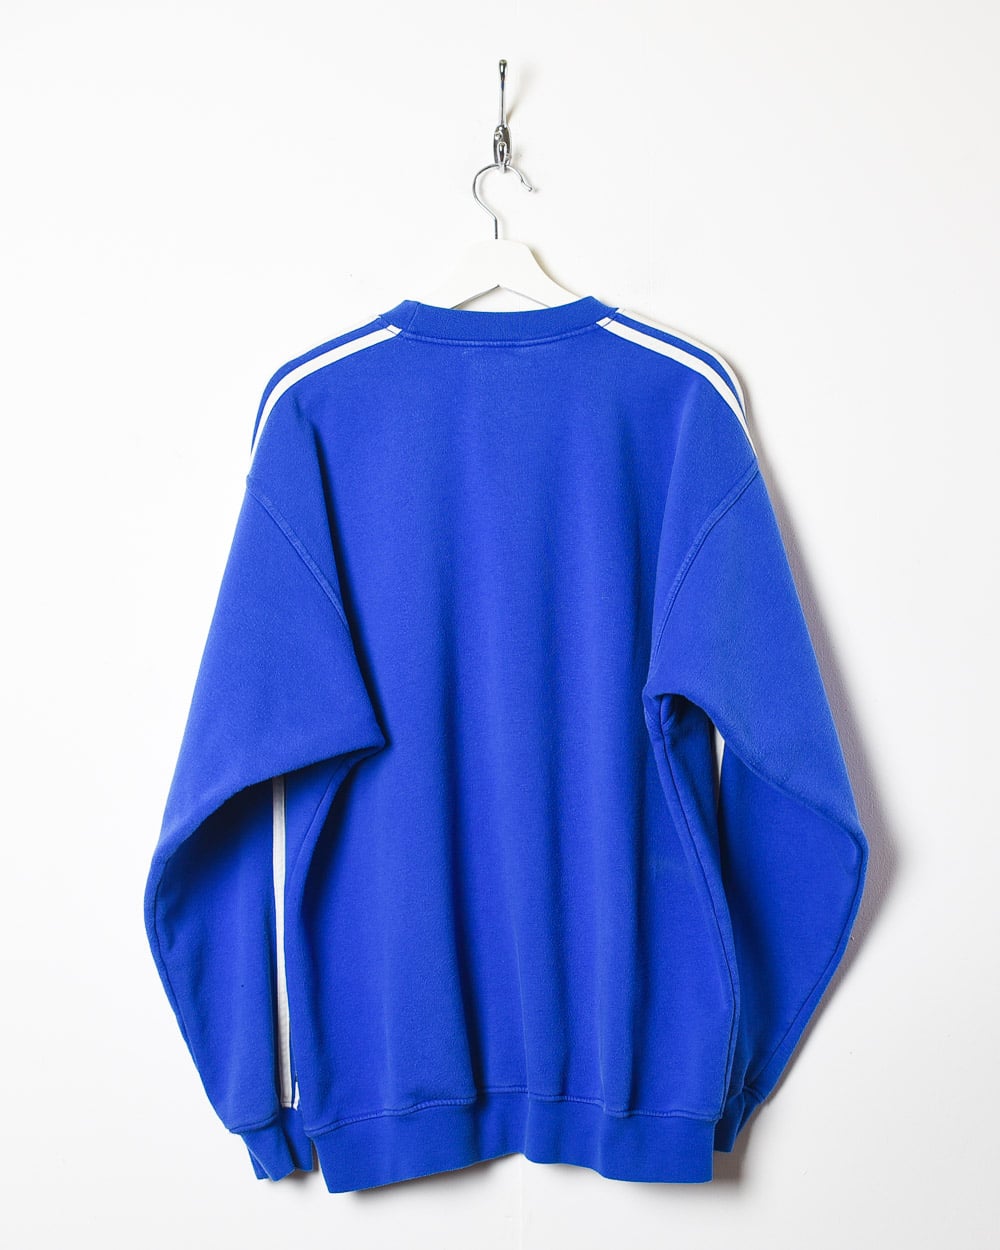 Blue Adidas Sweatshirt - X-Large